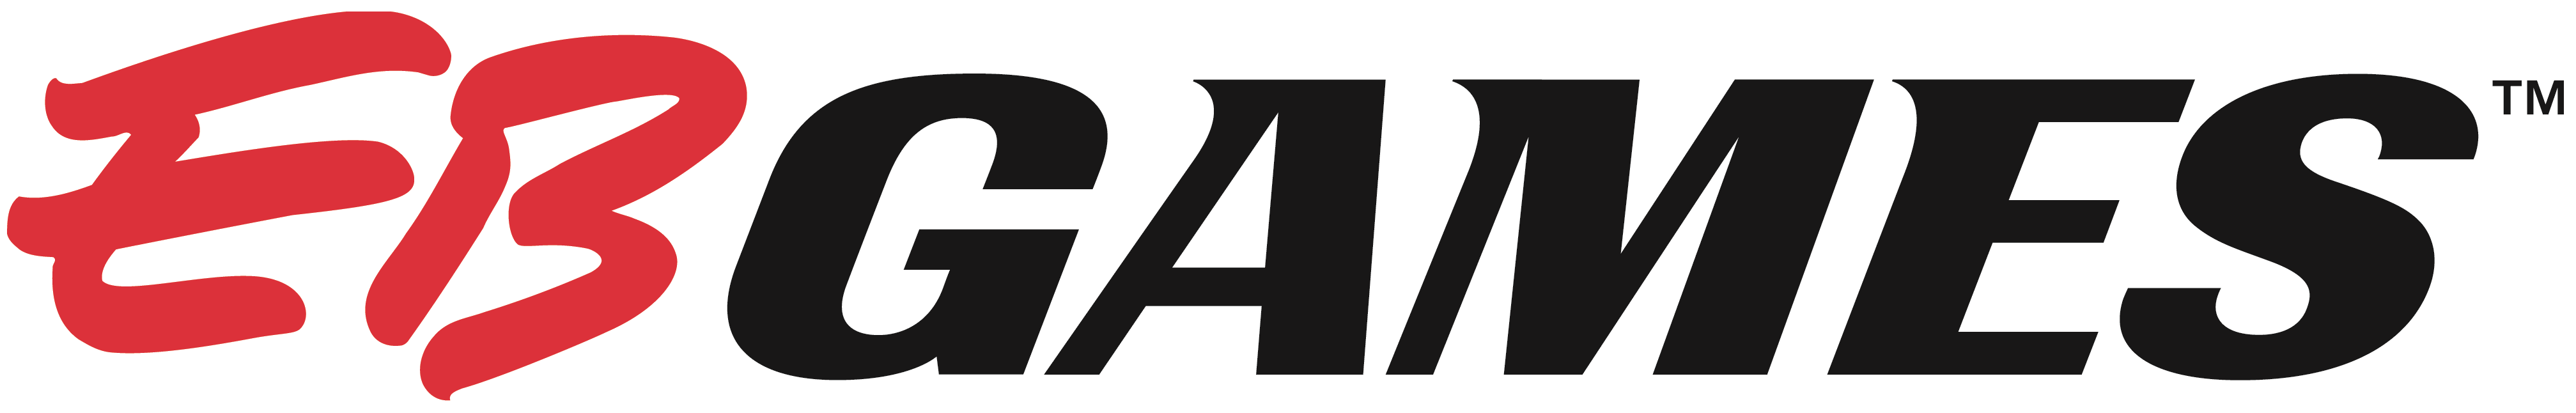 EB Games logo.png